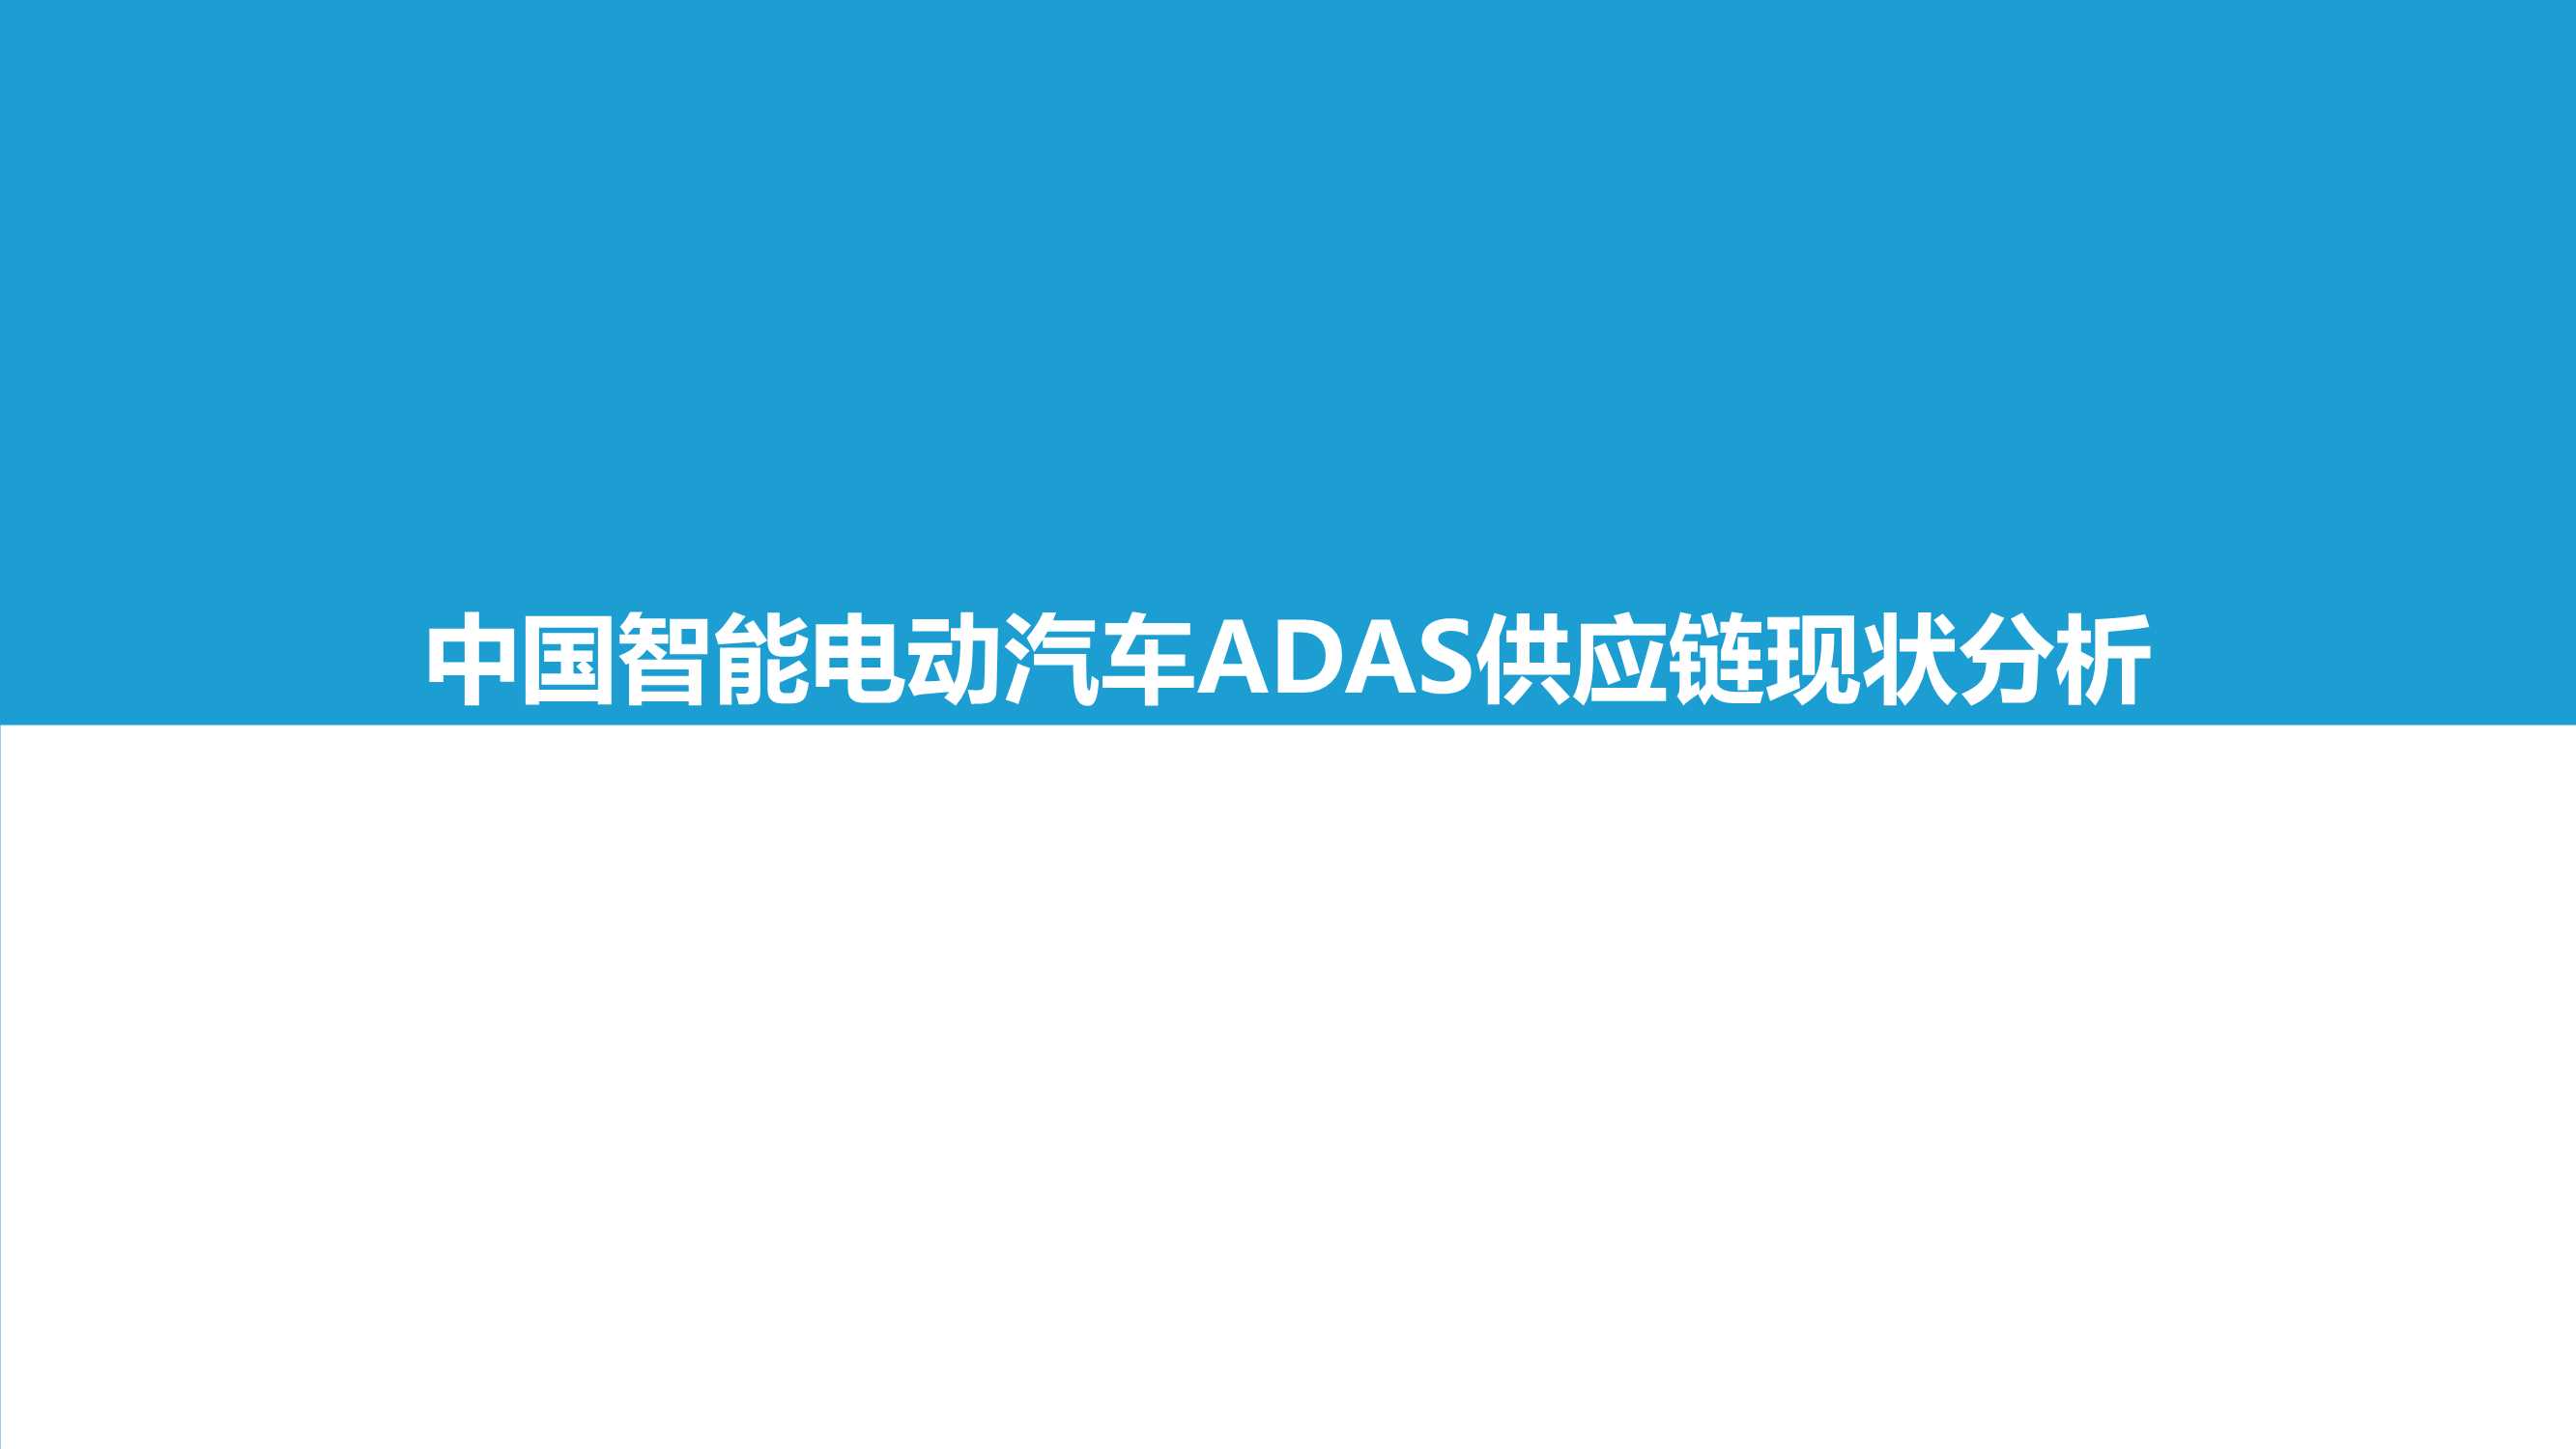 亿欧智库-2021中国智能电动汽车ADAS供应链现状研究报告-2021.12-40页